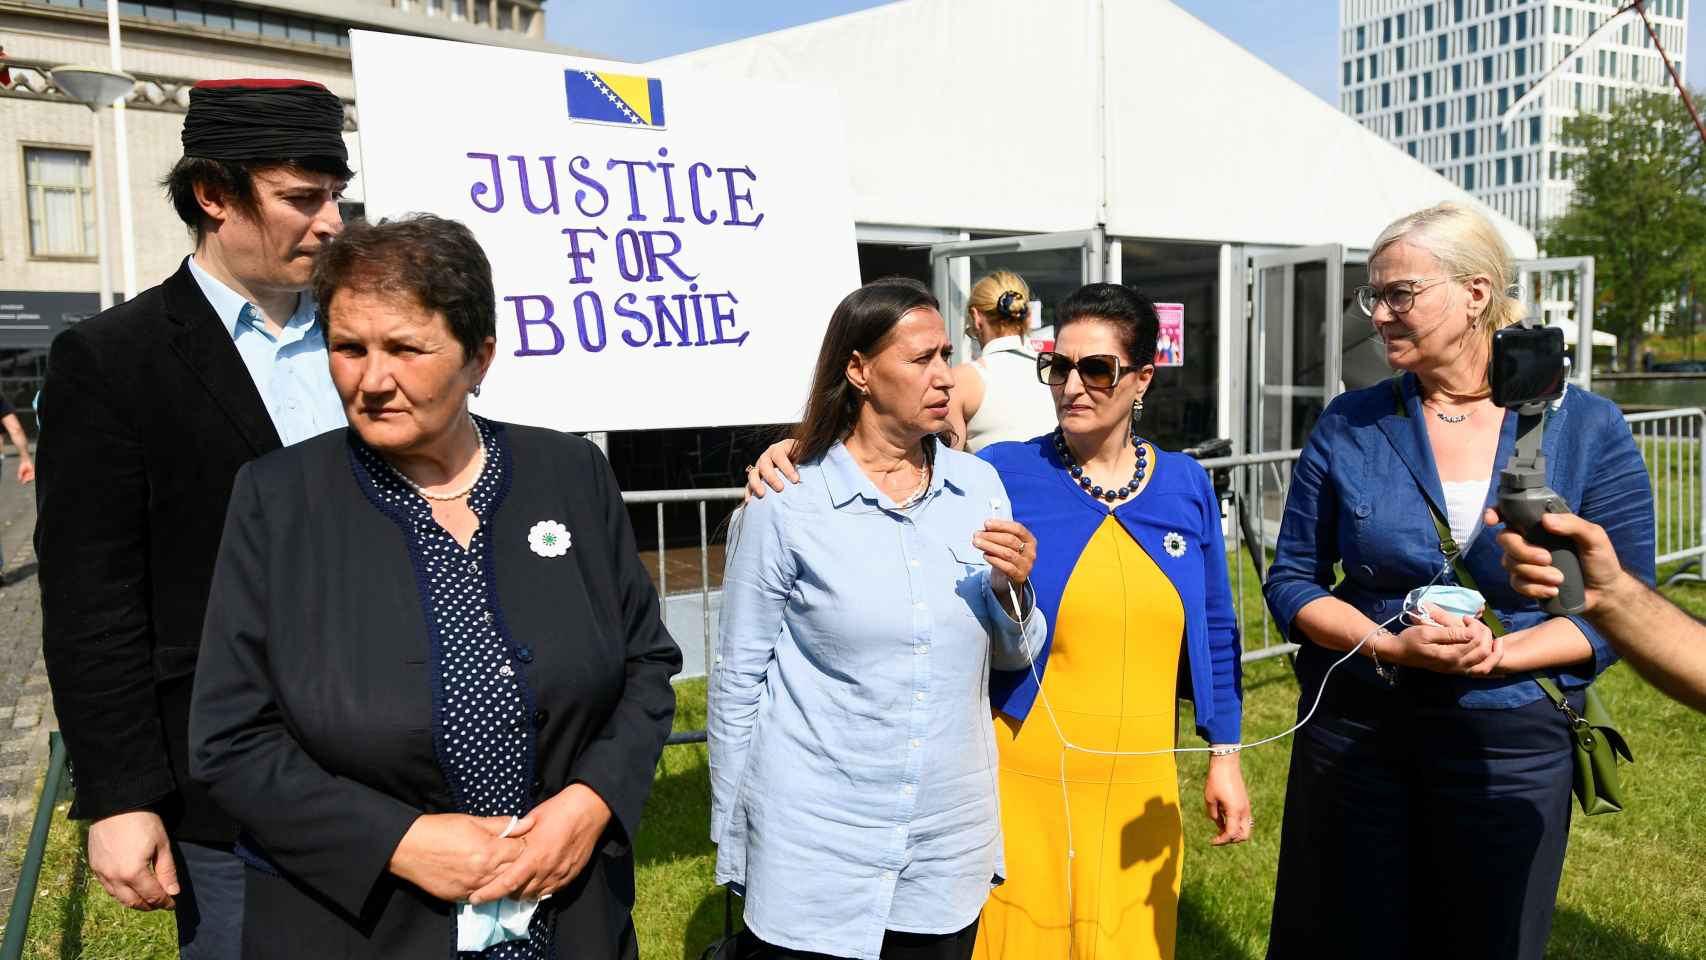 Un grupo de personas se manifiesta a las afueras del Tribunal reclamando Justicia para Bosnia.